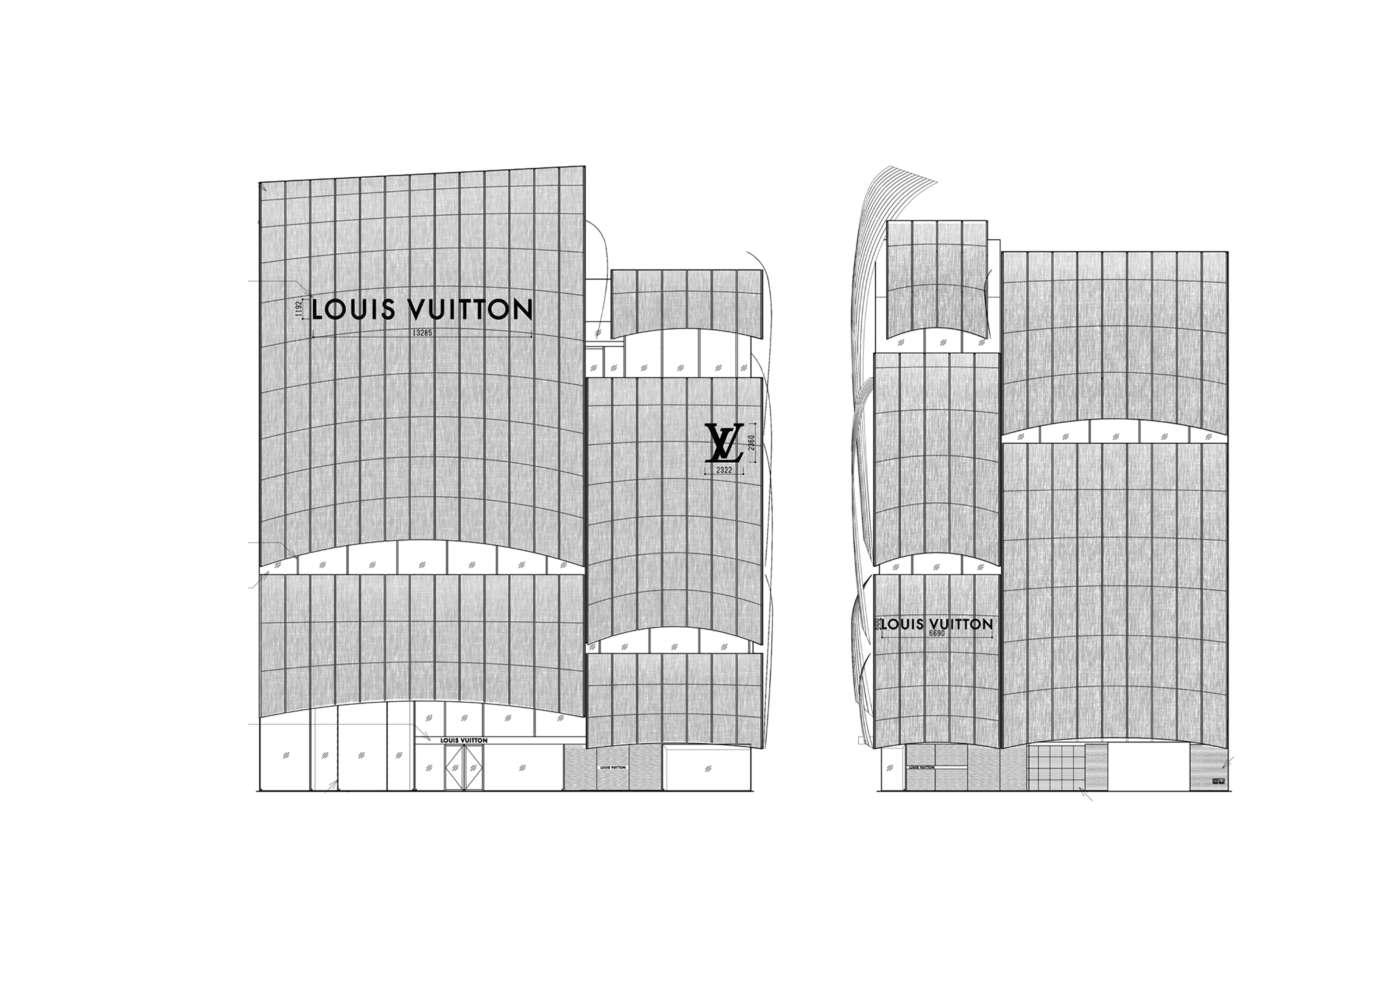 Gallery of Louis Vuitton Maison Osaka Midosuji, Aoki & Shinagawa +  Associates